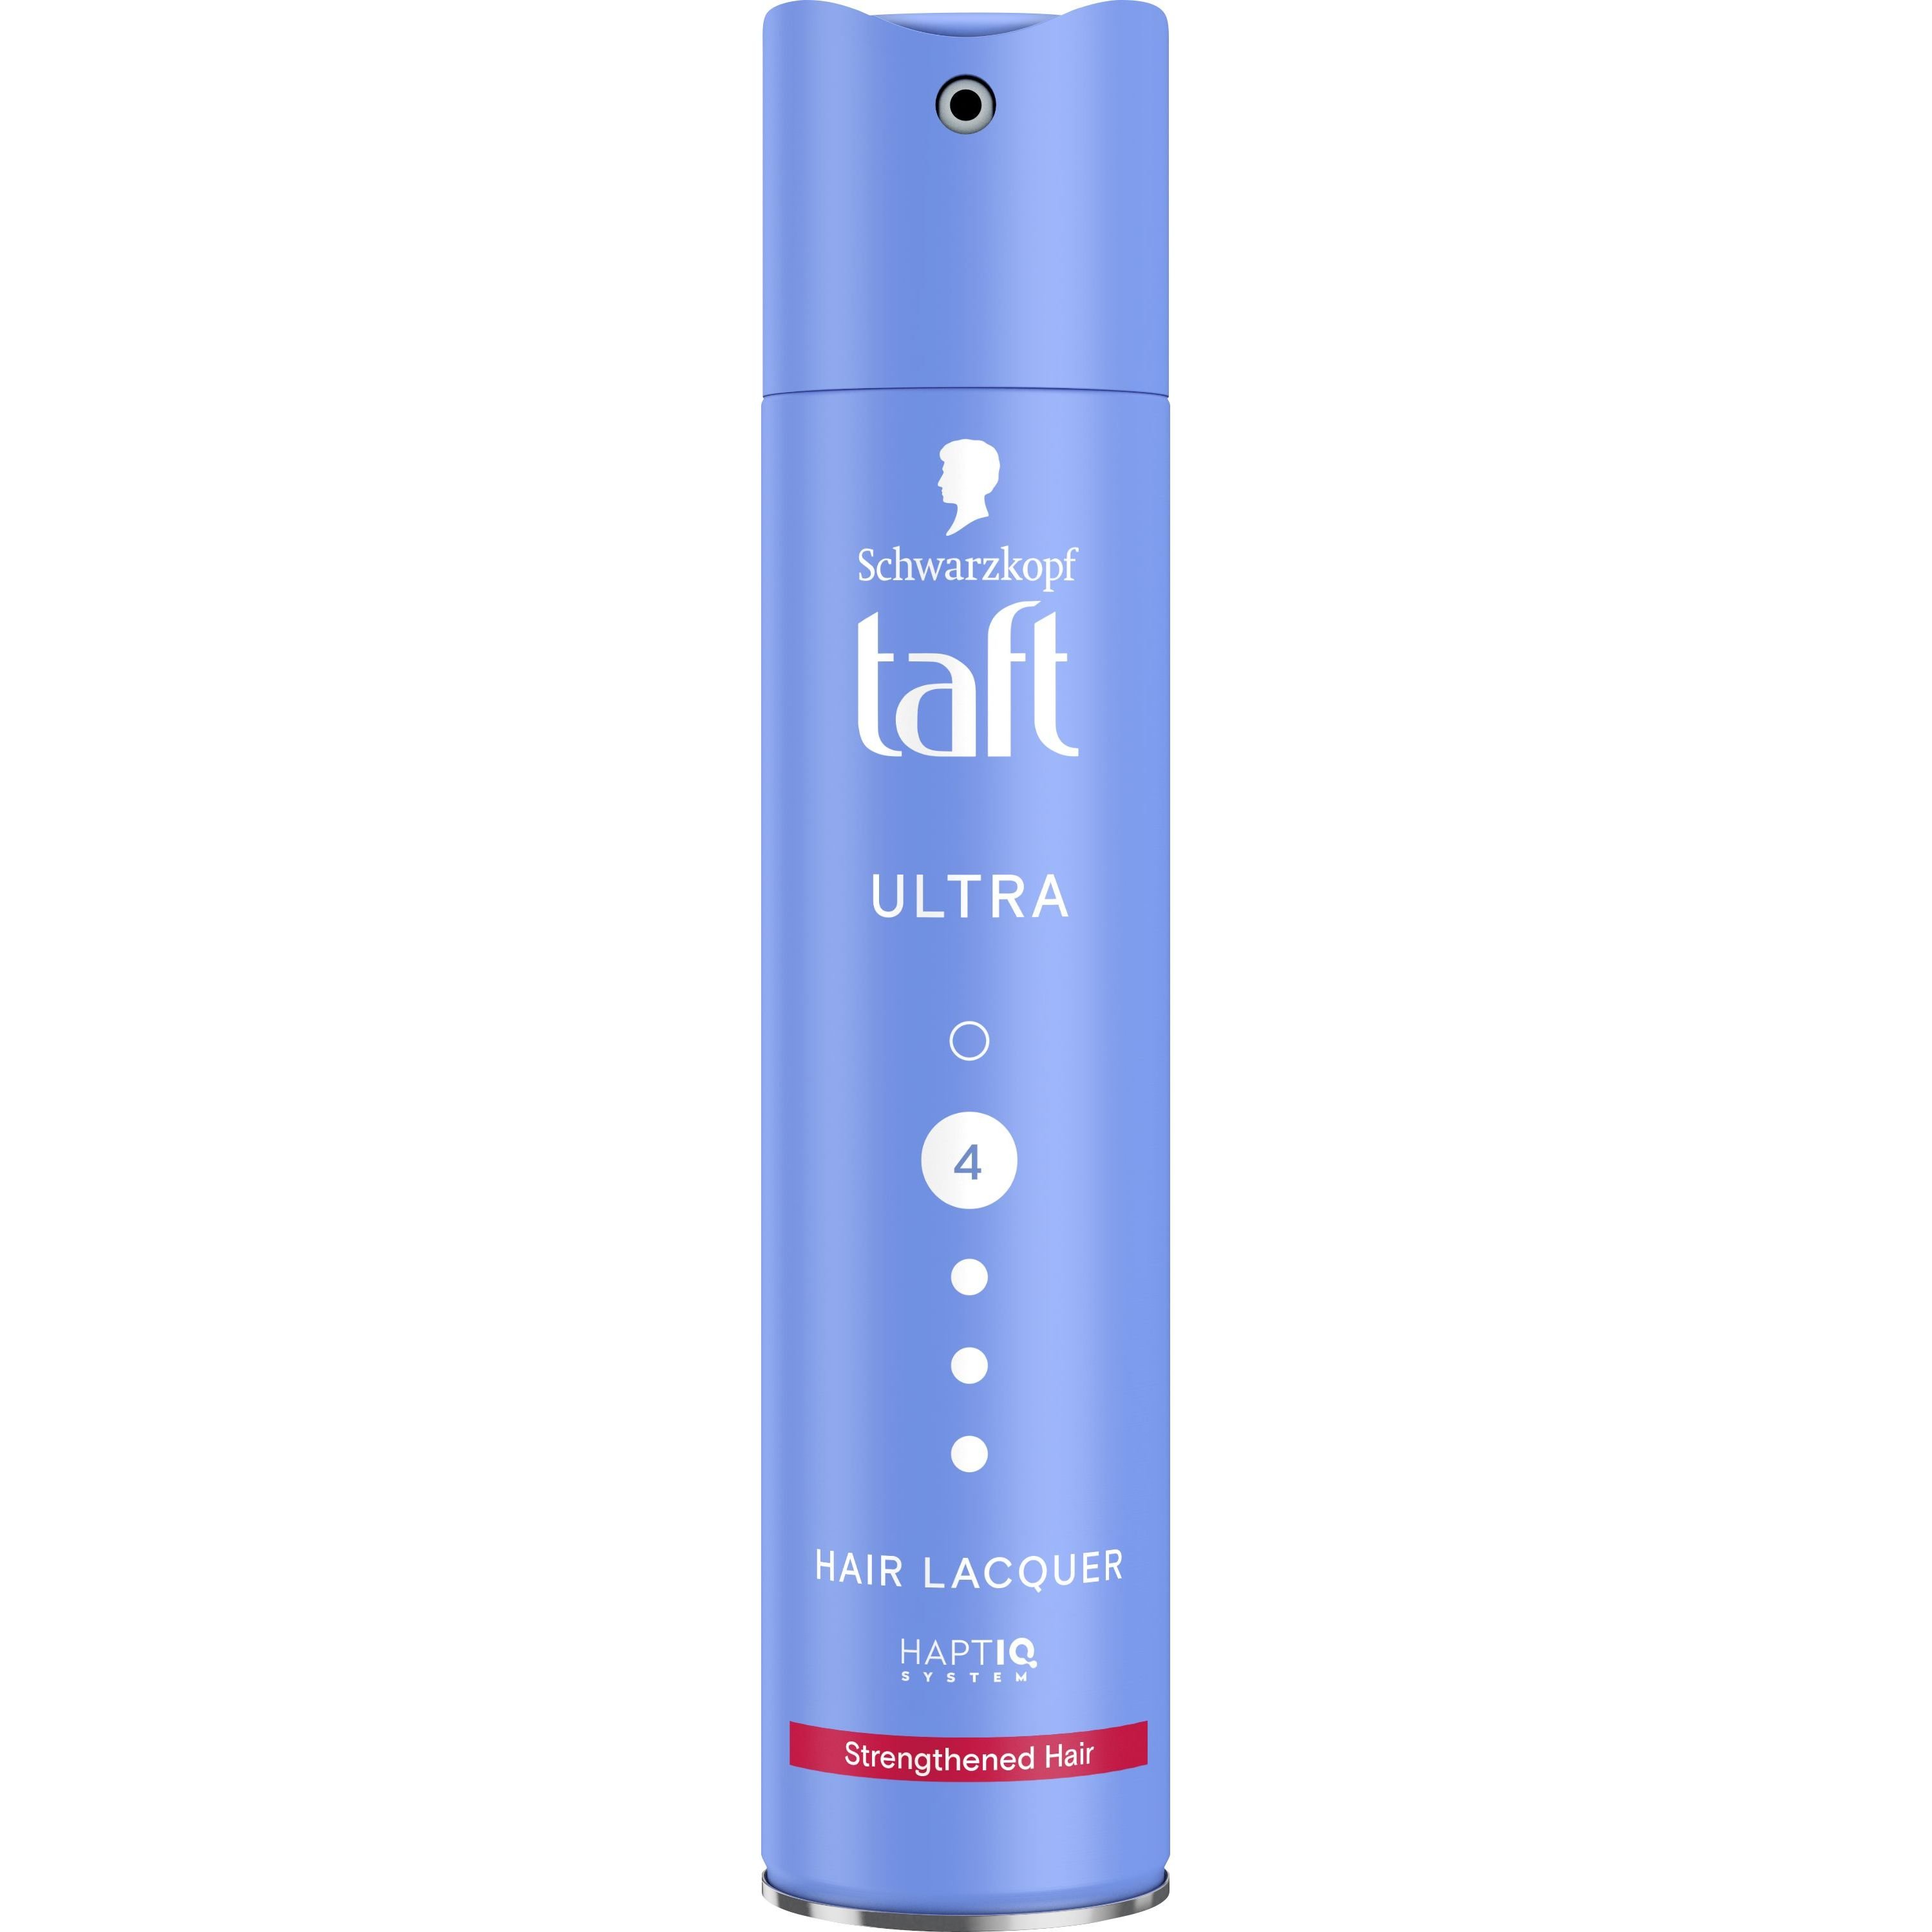 Лак Taft Ultra 4 для зміцнення волосся 250 мл - фото 1